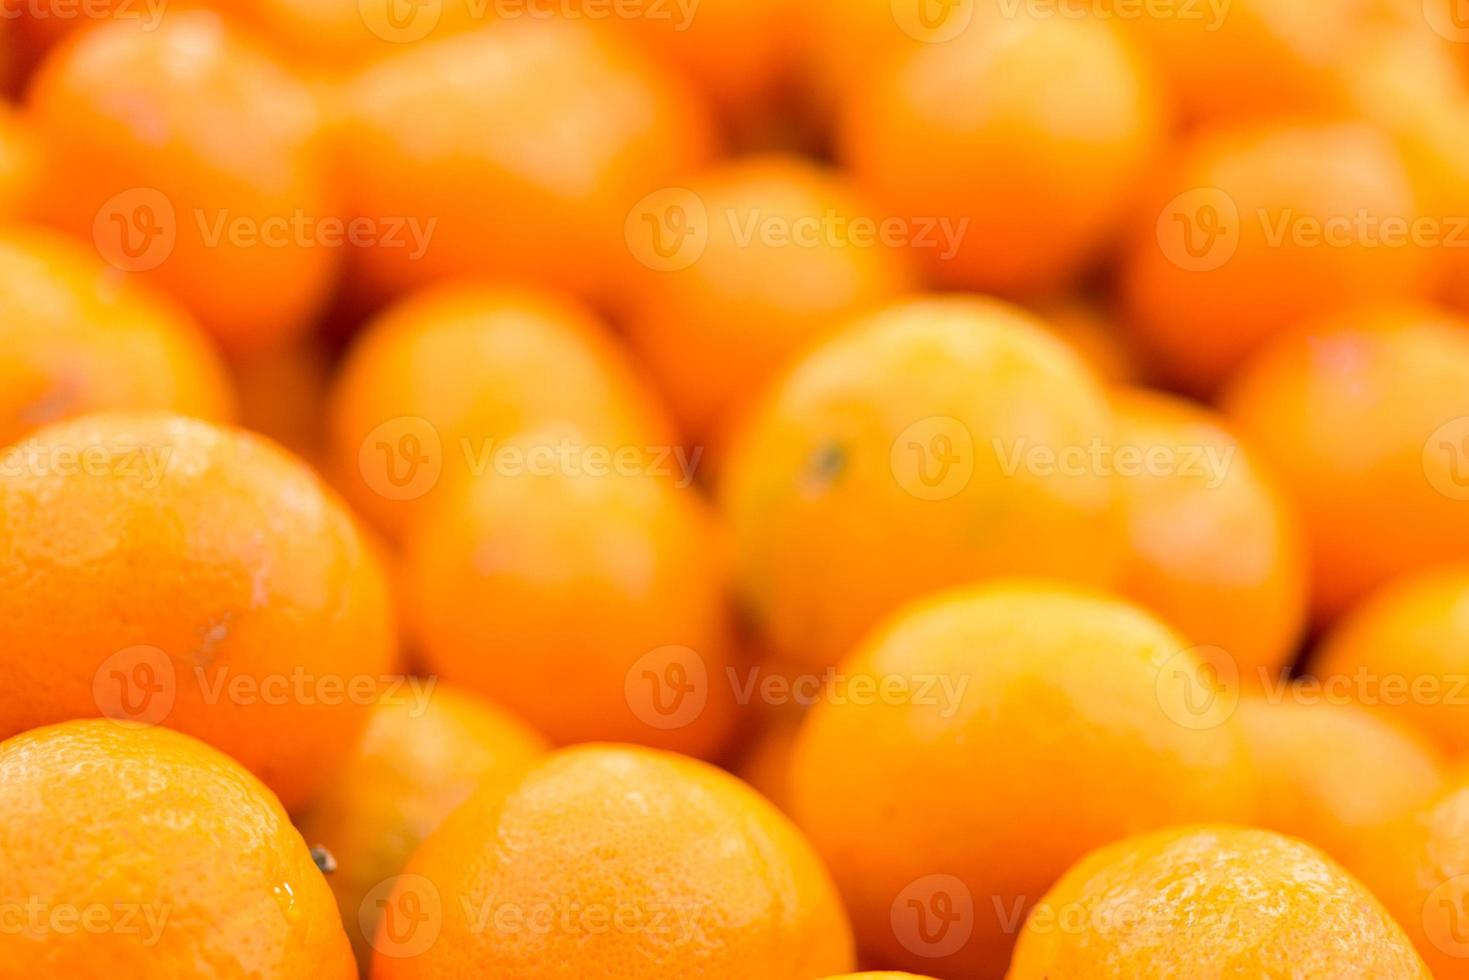 mandarinas con gota de agua foto